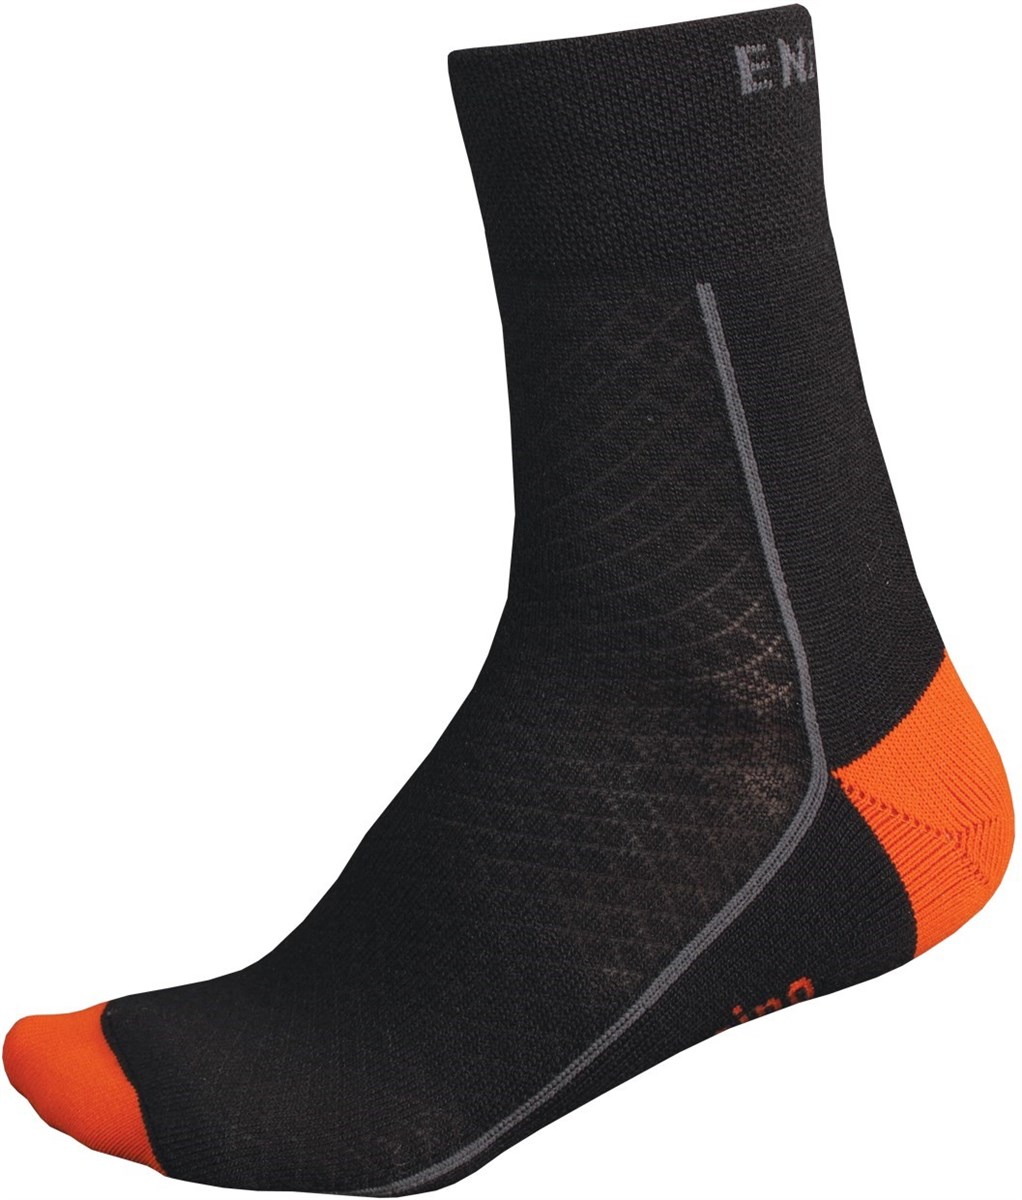 Endura BaaBaa Merino Wool Winter Socks SS16 product image